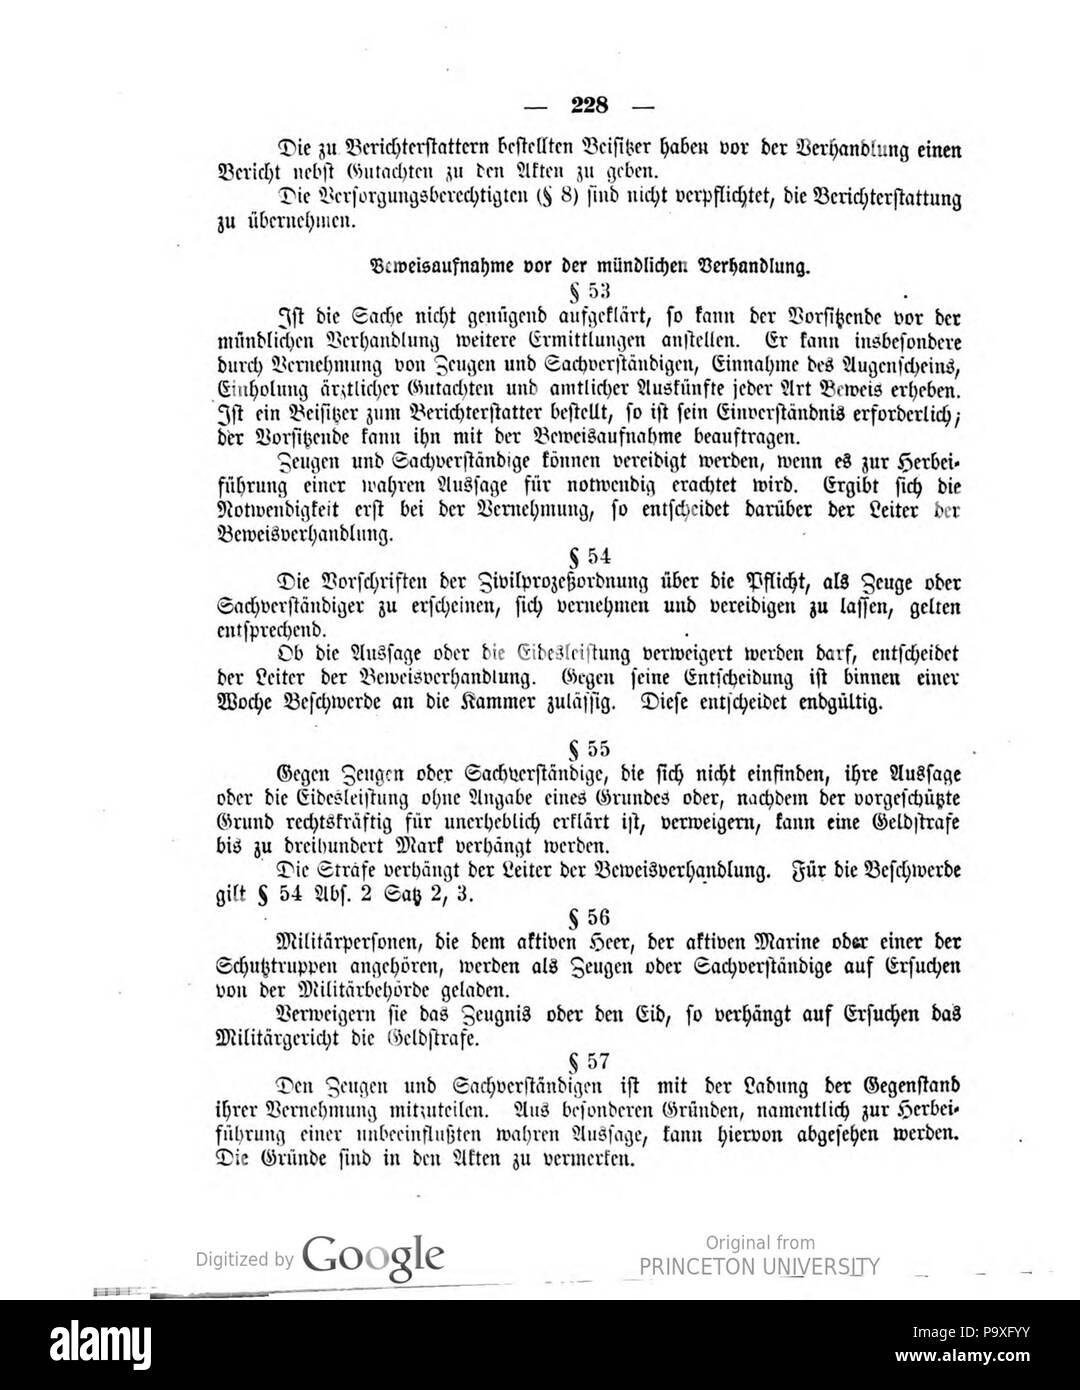 487 Deutsches Reichsgesetzblatt 1919 043 0228 Stock Photo